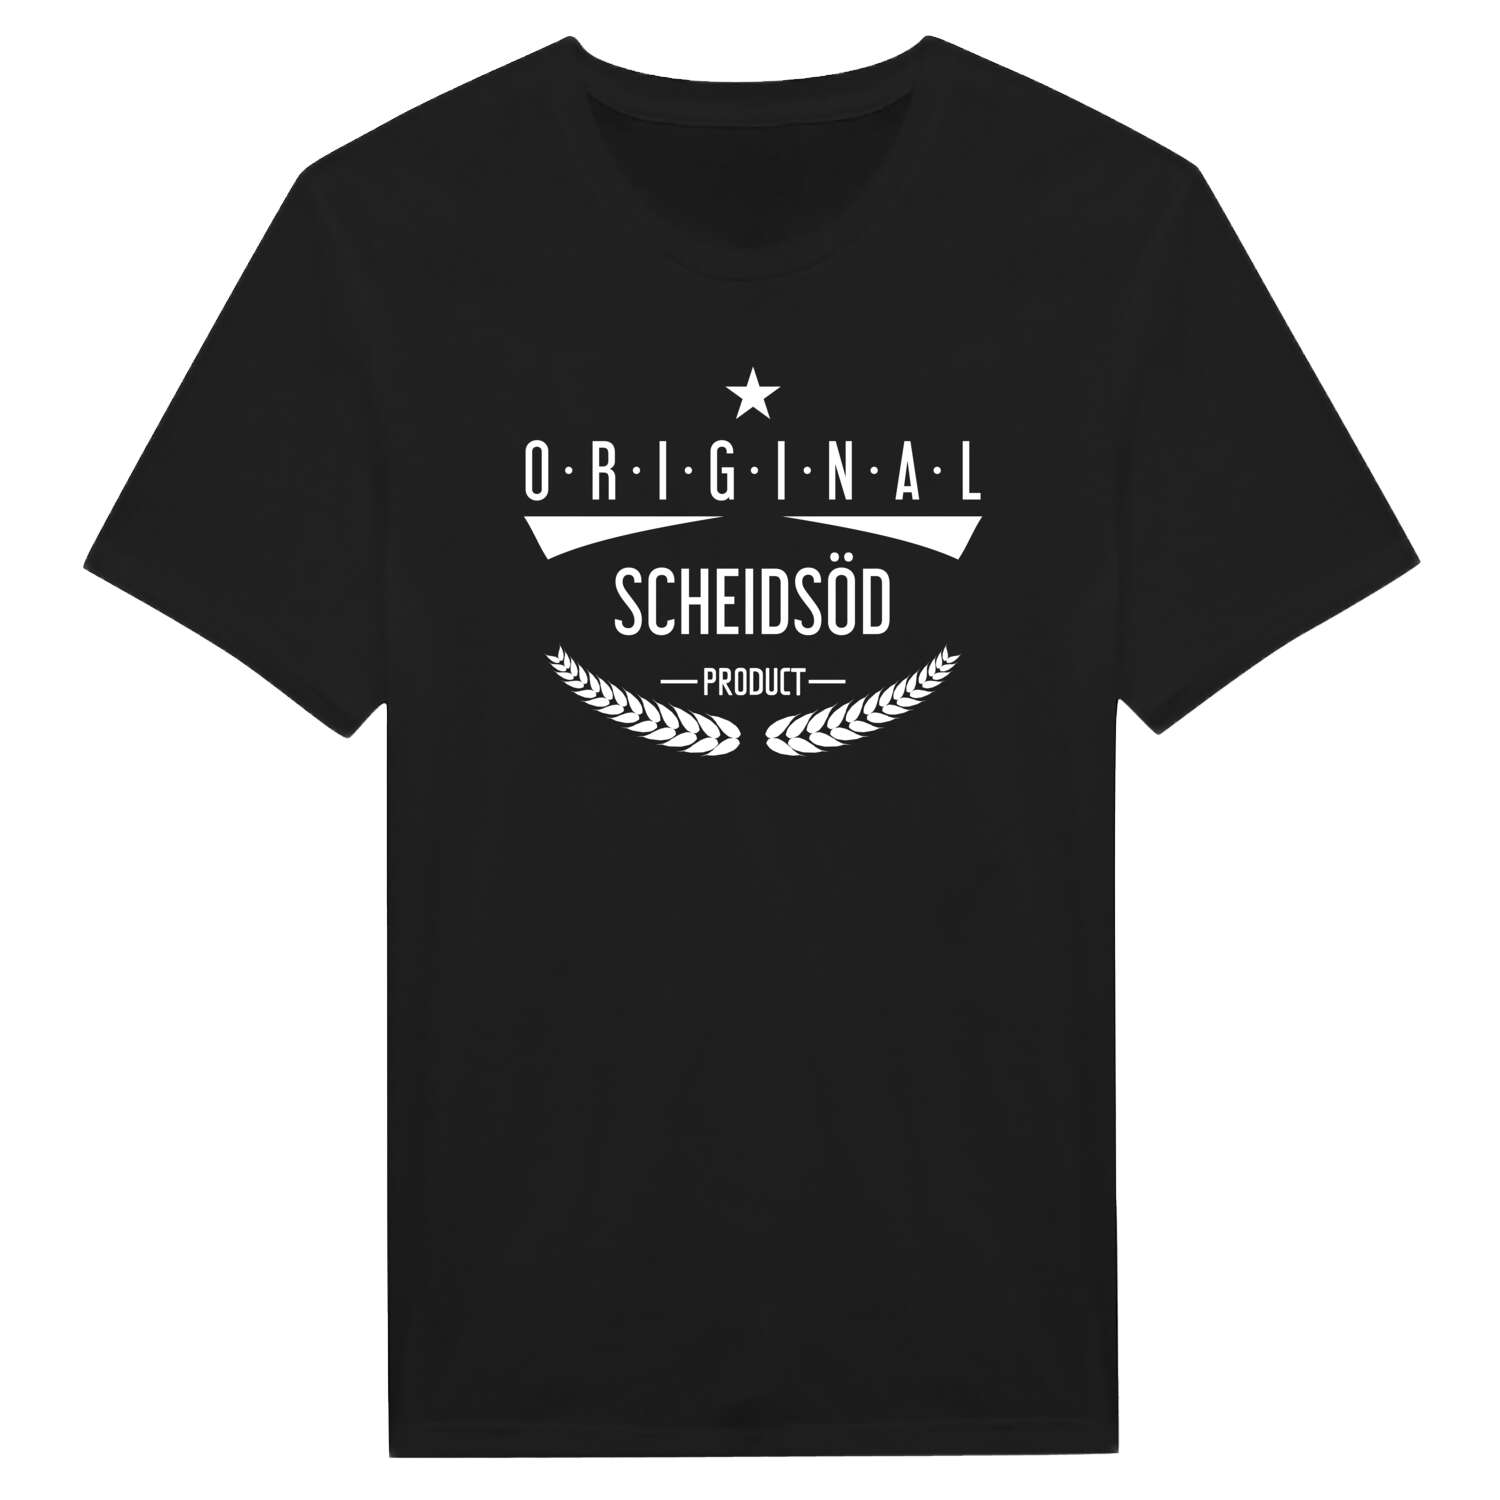 Scheidsöd T-Shirt »Original Product«